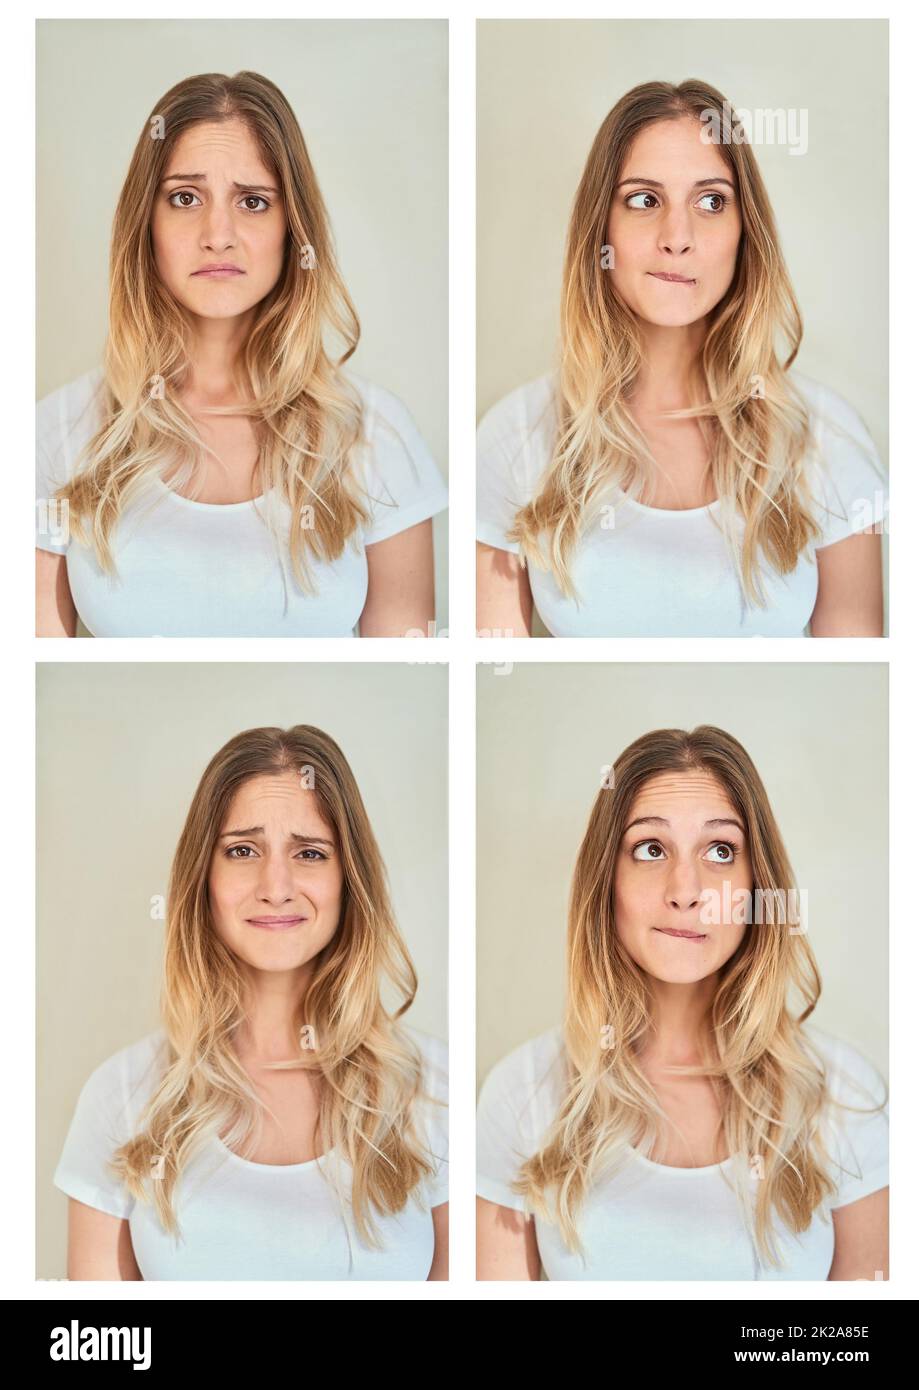 Lasst mich das durchdenken Zusammengesetzte Aufnahme einer jungen Frau, die im Studio verschiedene Gesichtsausdrücke macht. Stockfoto